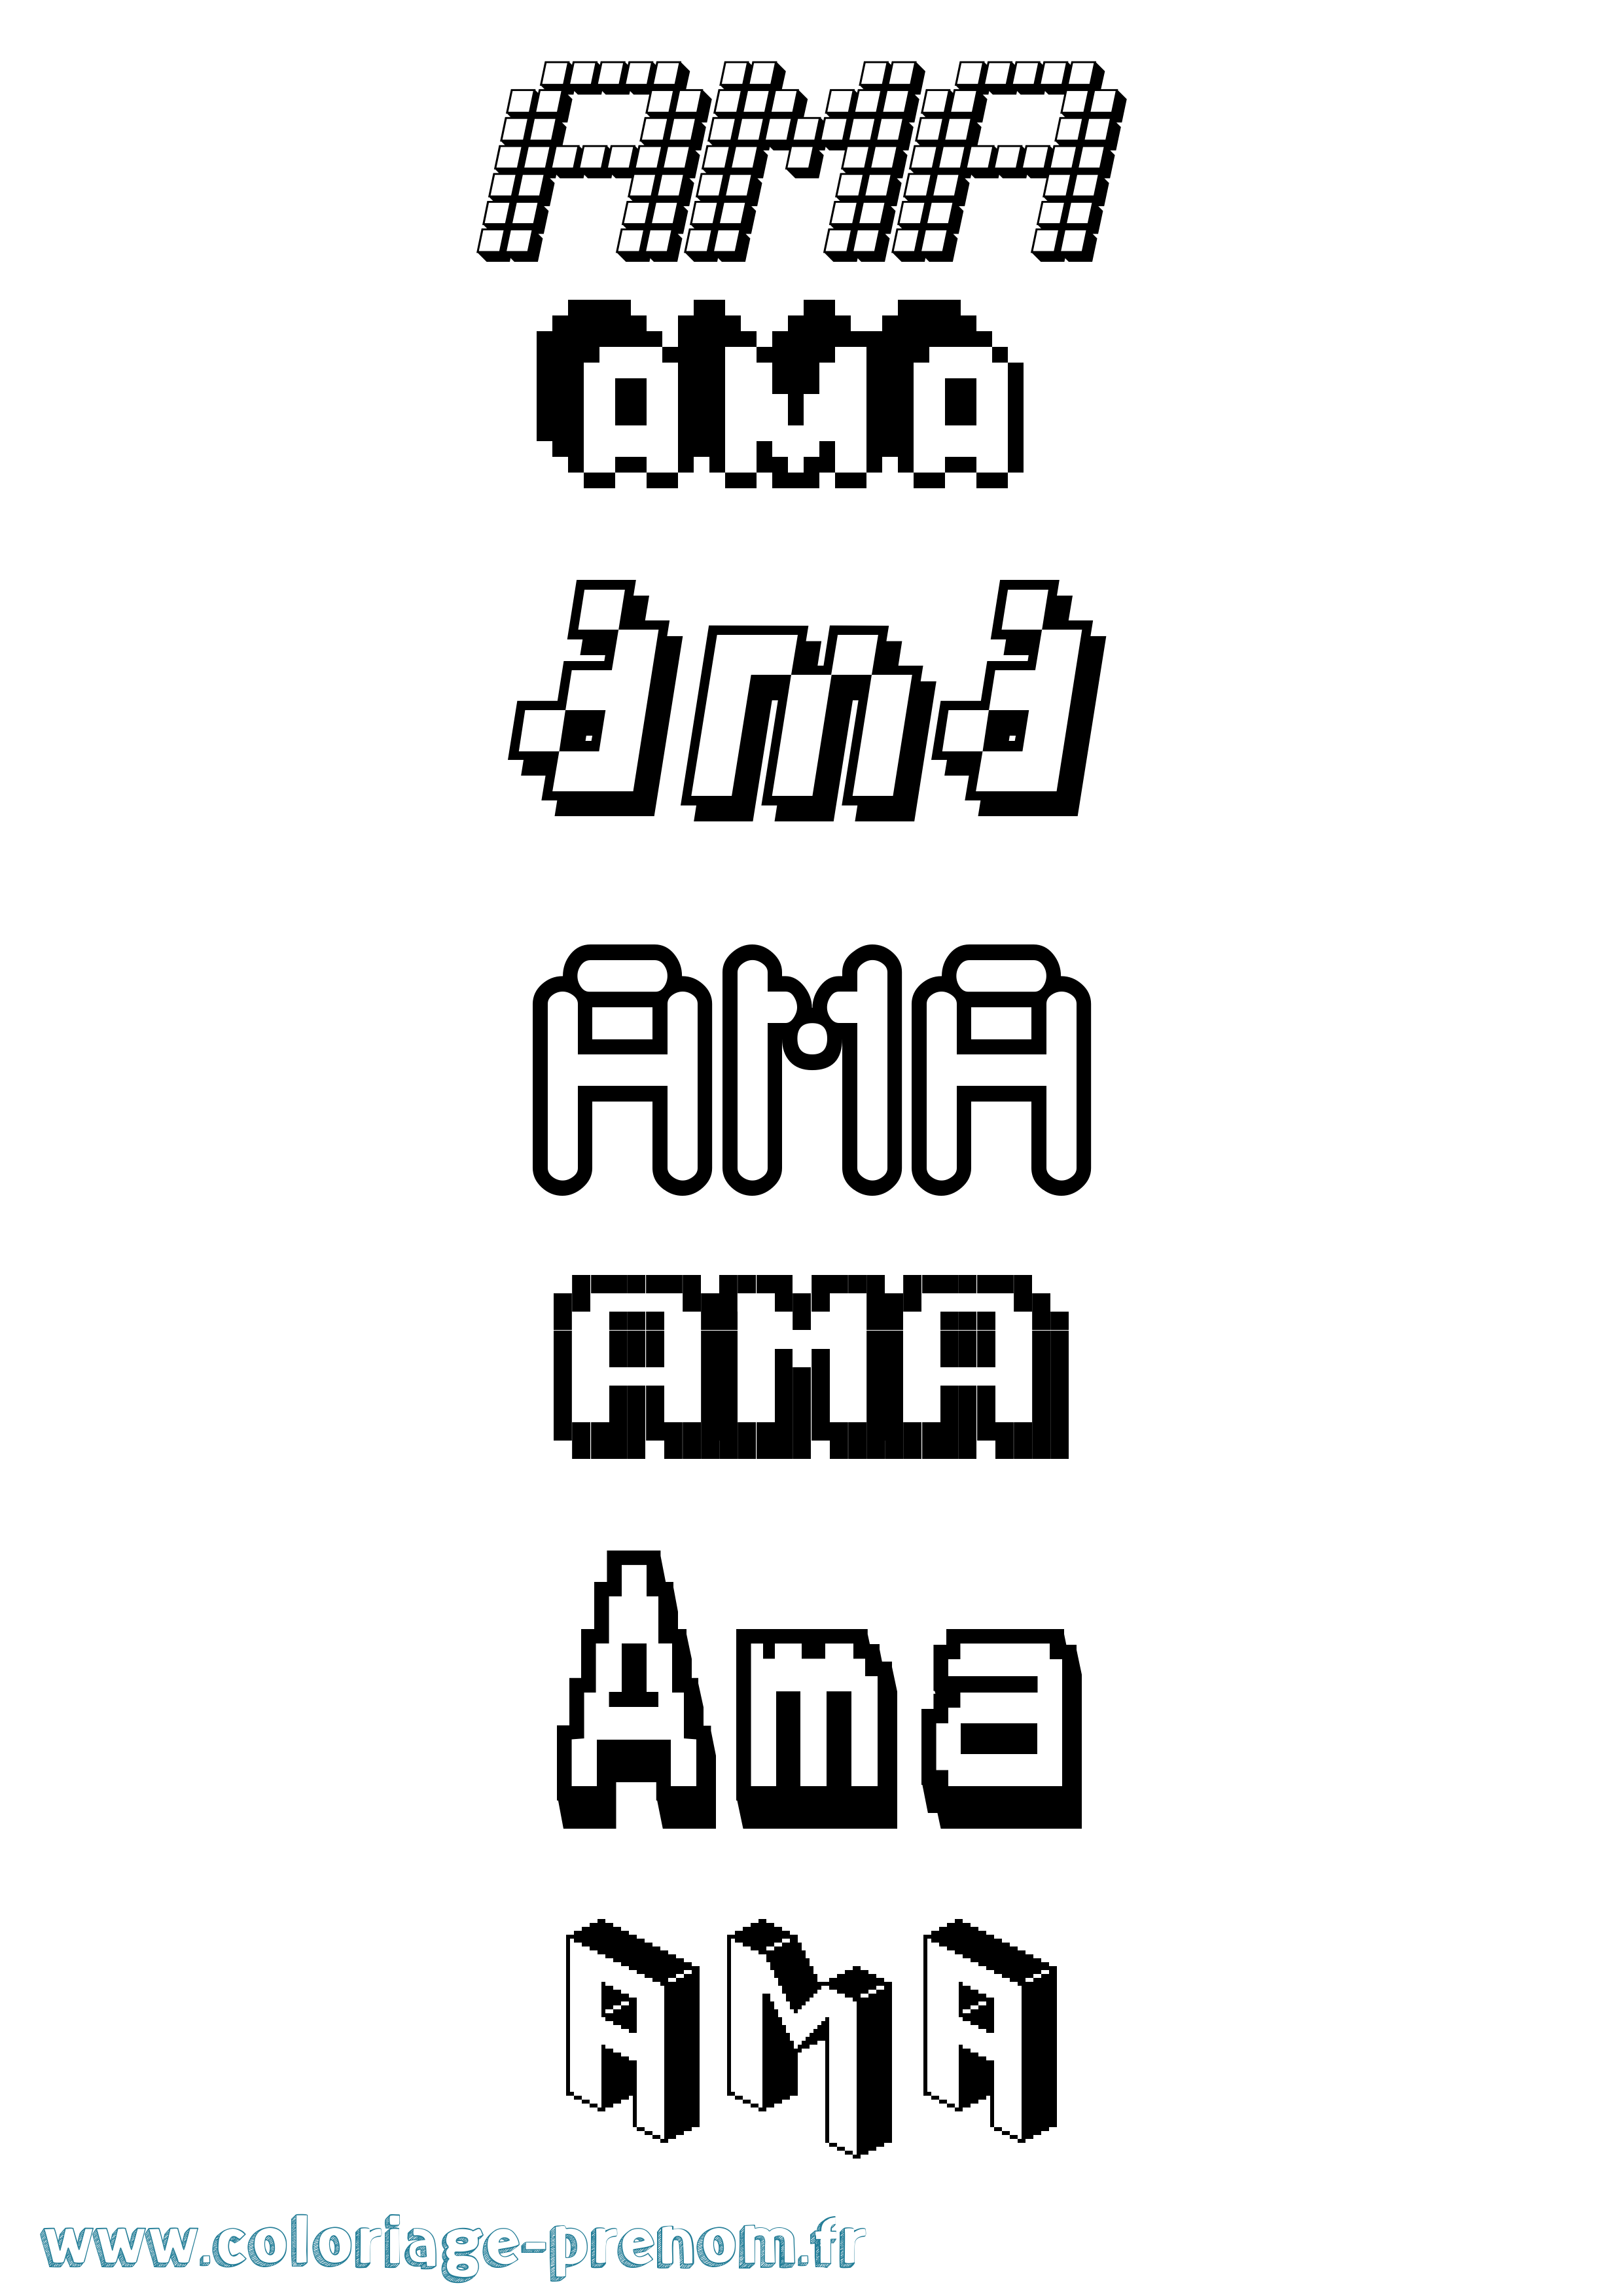 Coloriage prénom Ama Pixel